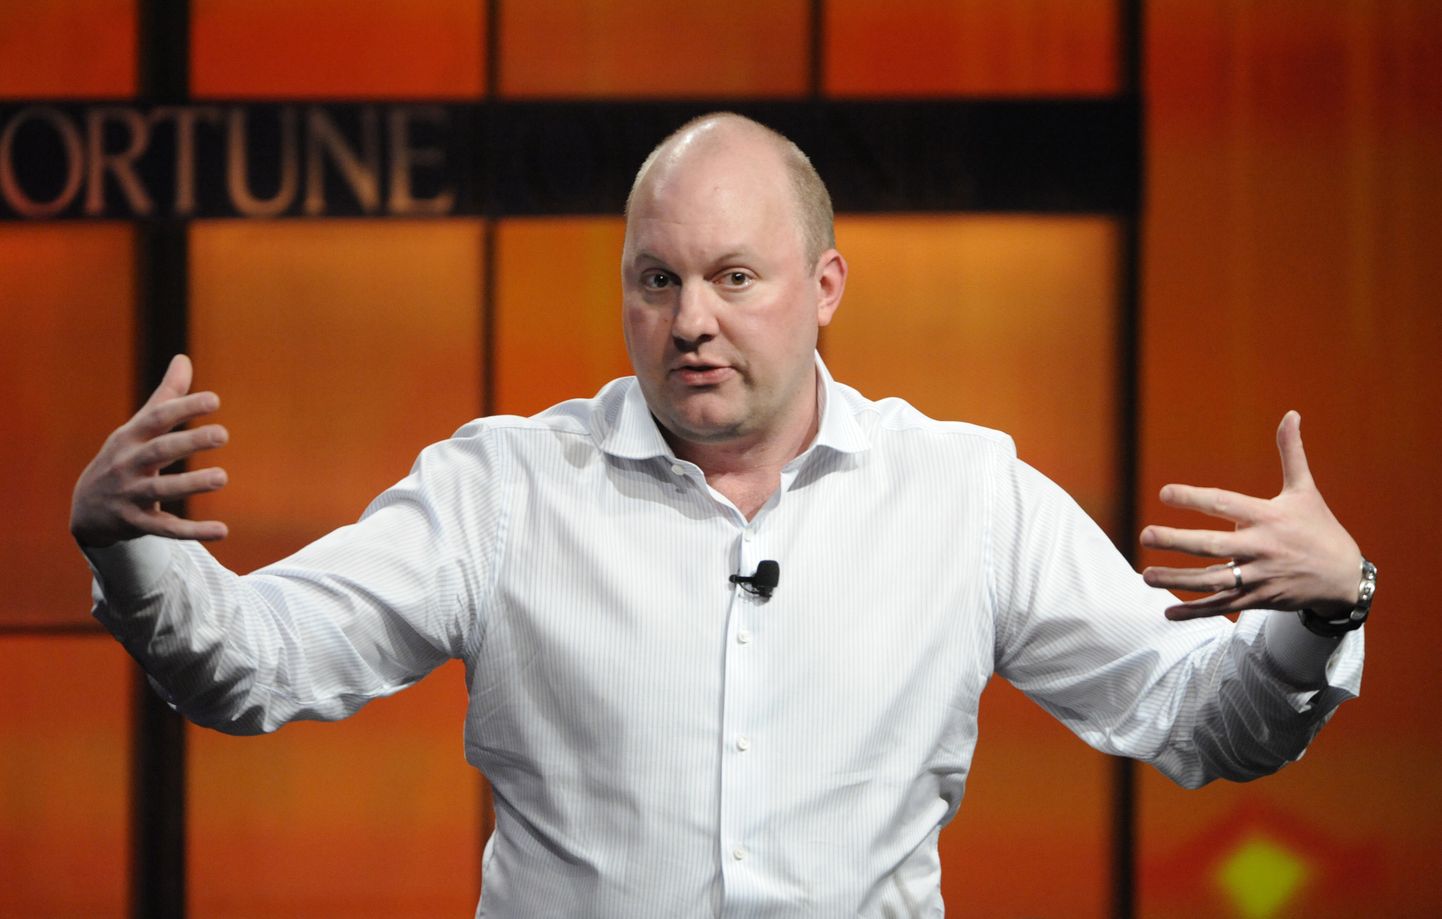 Maailma üks tuntumaid riskikapitalifonde Andreessen Horowitz teatas investoritele, et inveteerib uude krüpofondi varasemast aeglasemas tempos. Fotol fondi kaasasutaja Marc Andreessen.